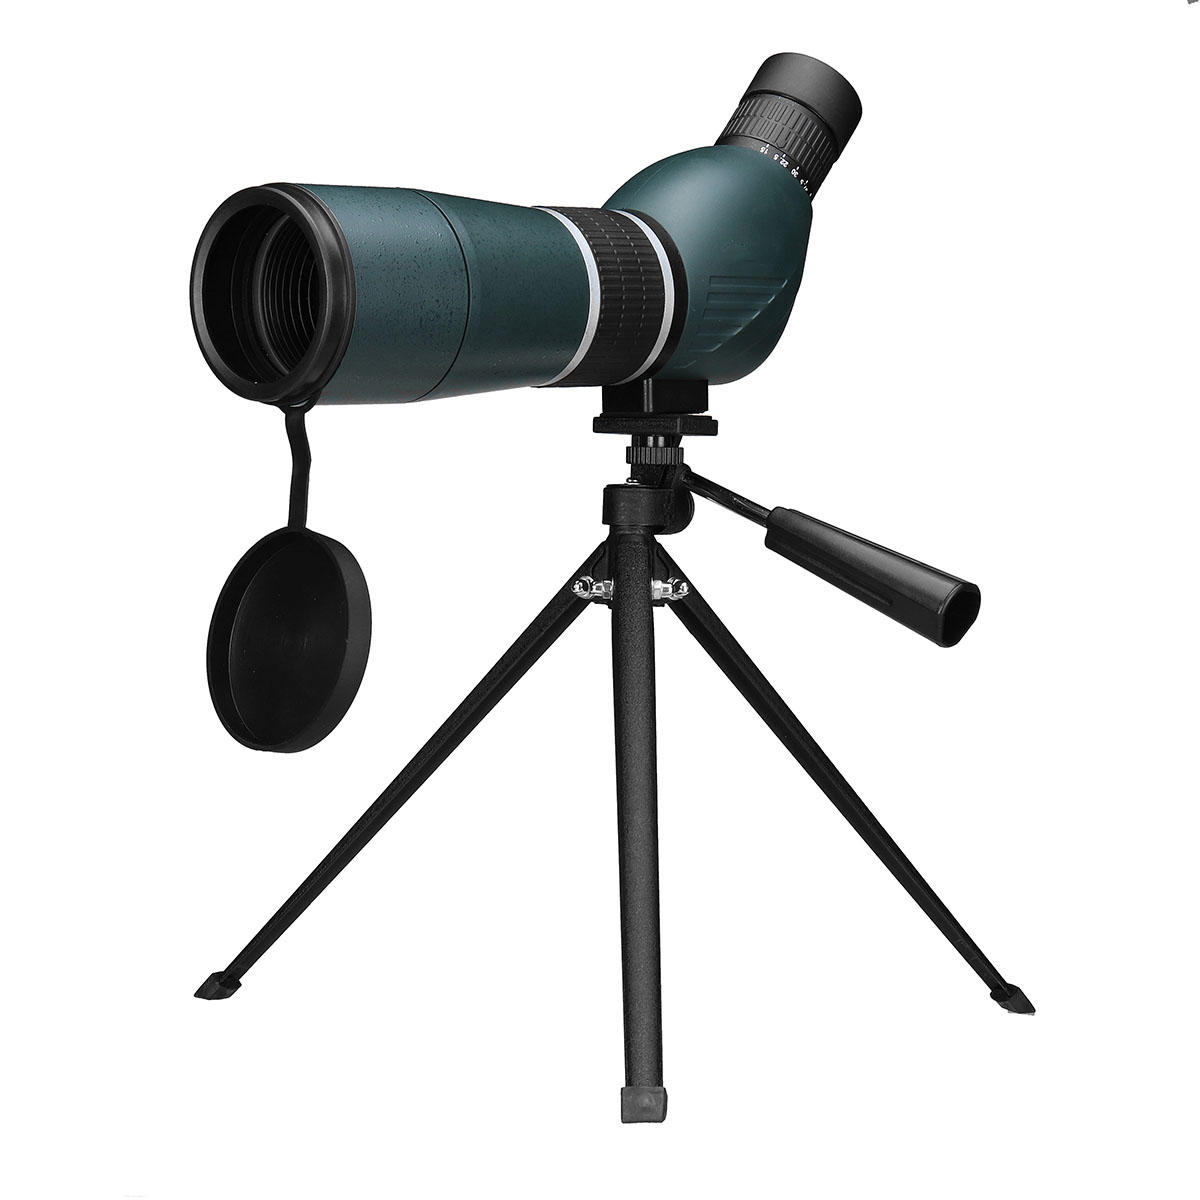 15-45x60 al aire libre Zoom Monocular HD Telescopio óptico de visión nocturna Vida silvestre Brid Visualización cámping Viajes